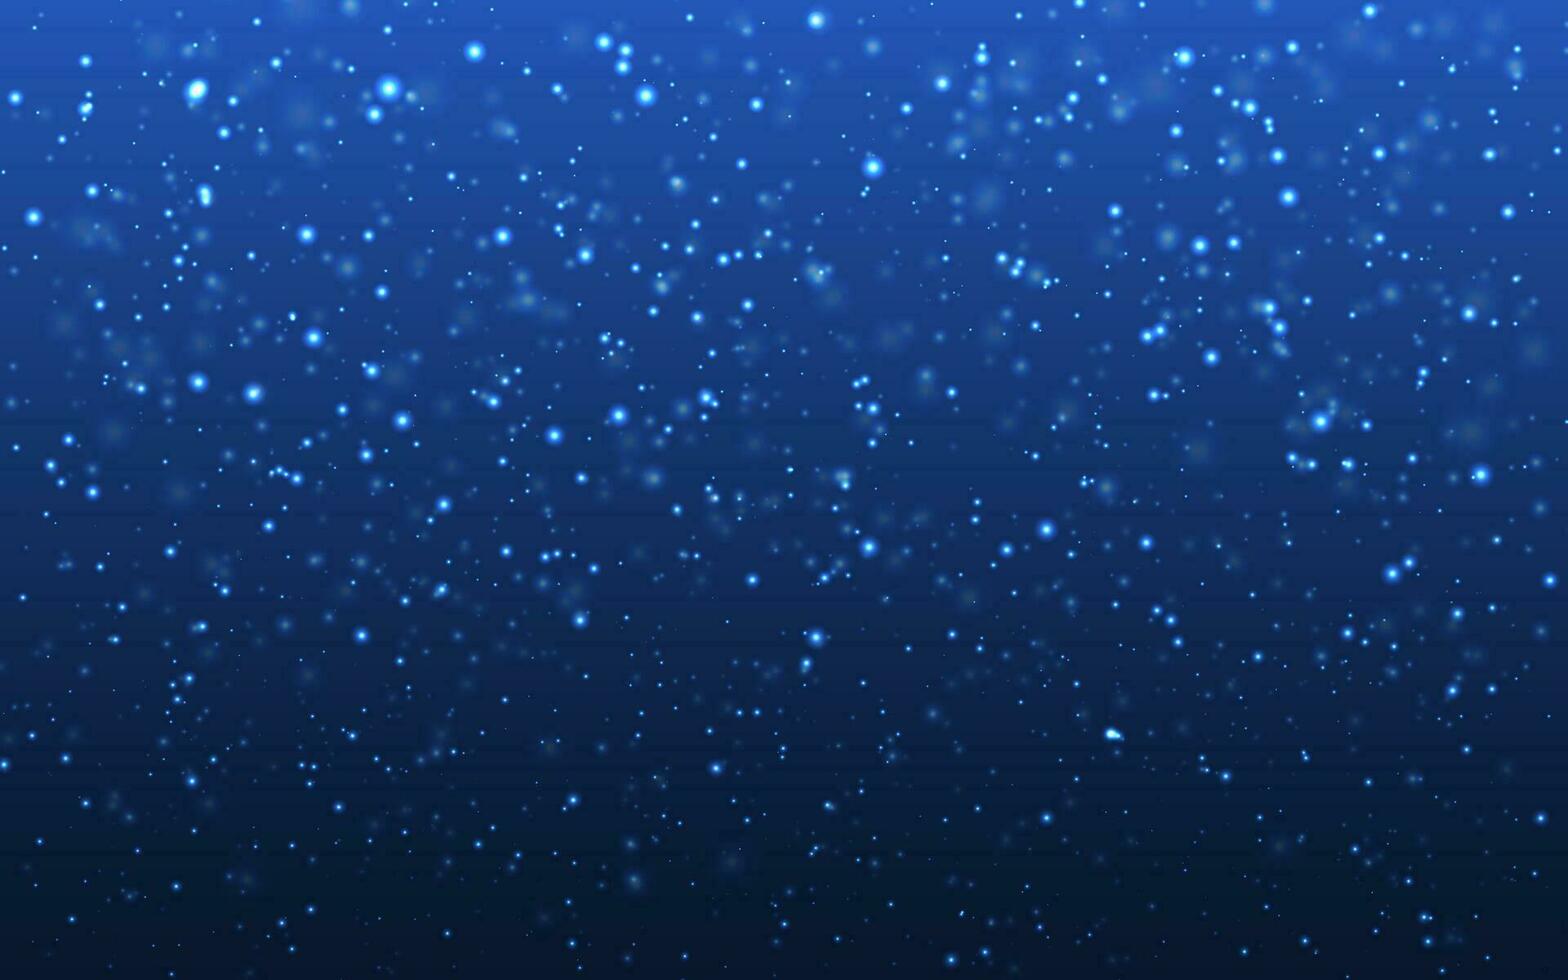 Natale neve. caduta i fiocchi di neve su blu sfondo. nevicata. vettore illustrazione